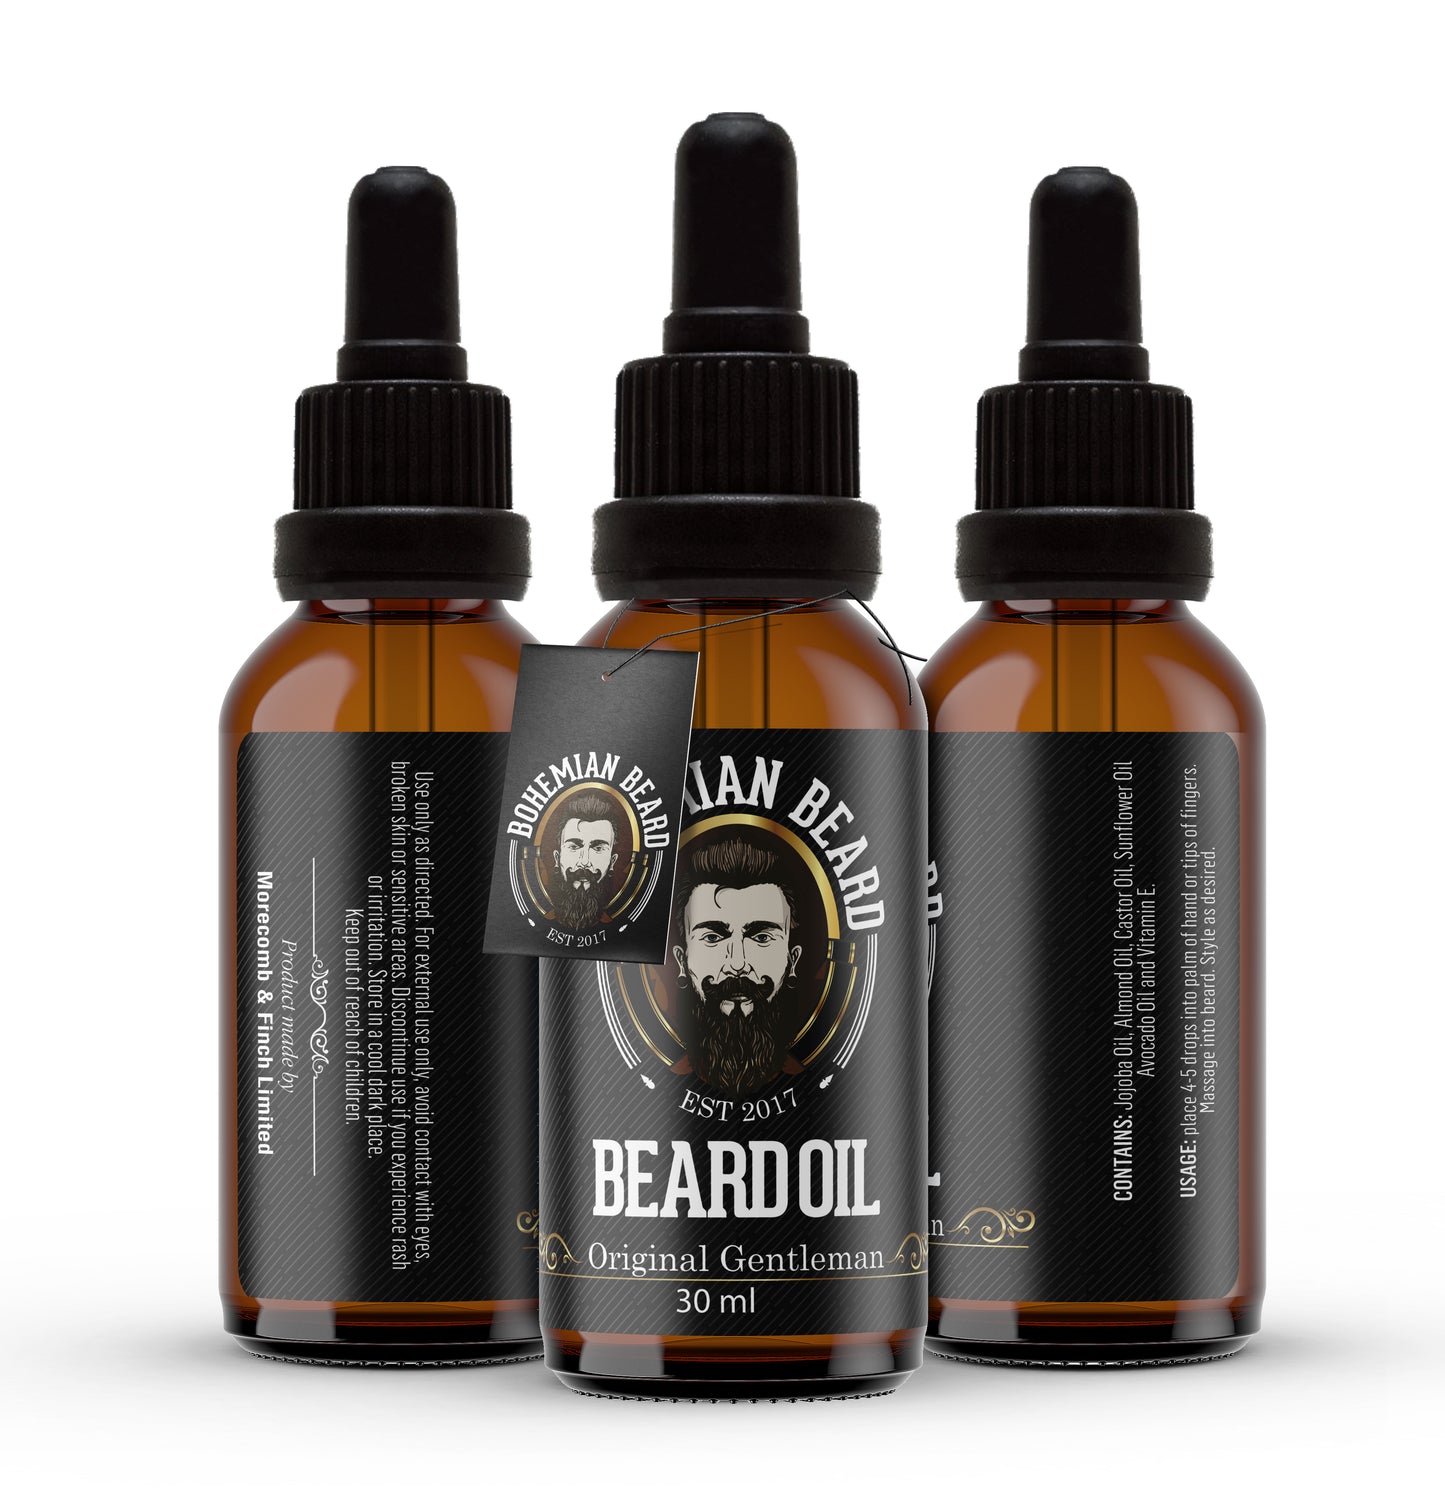 Beard oil nz